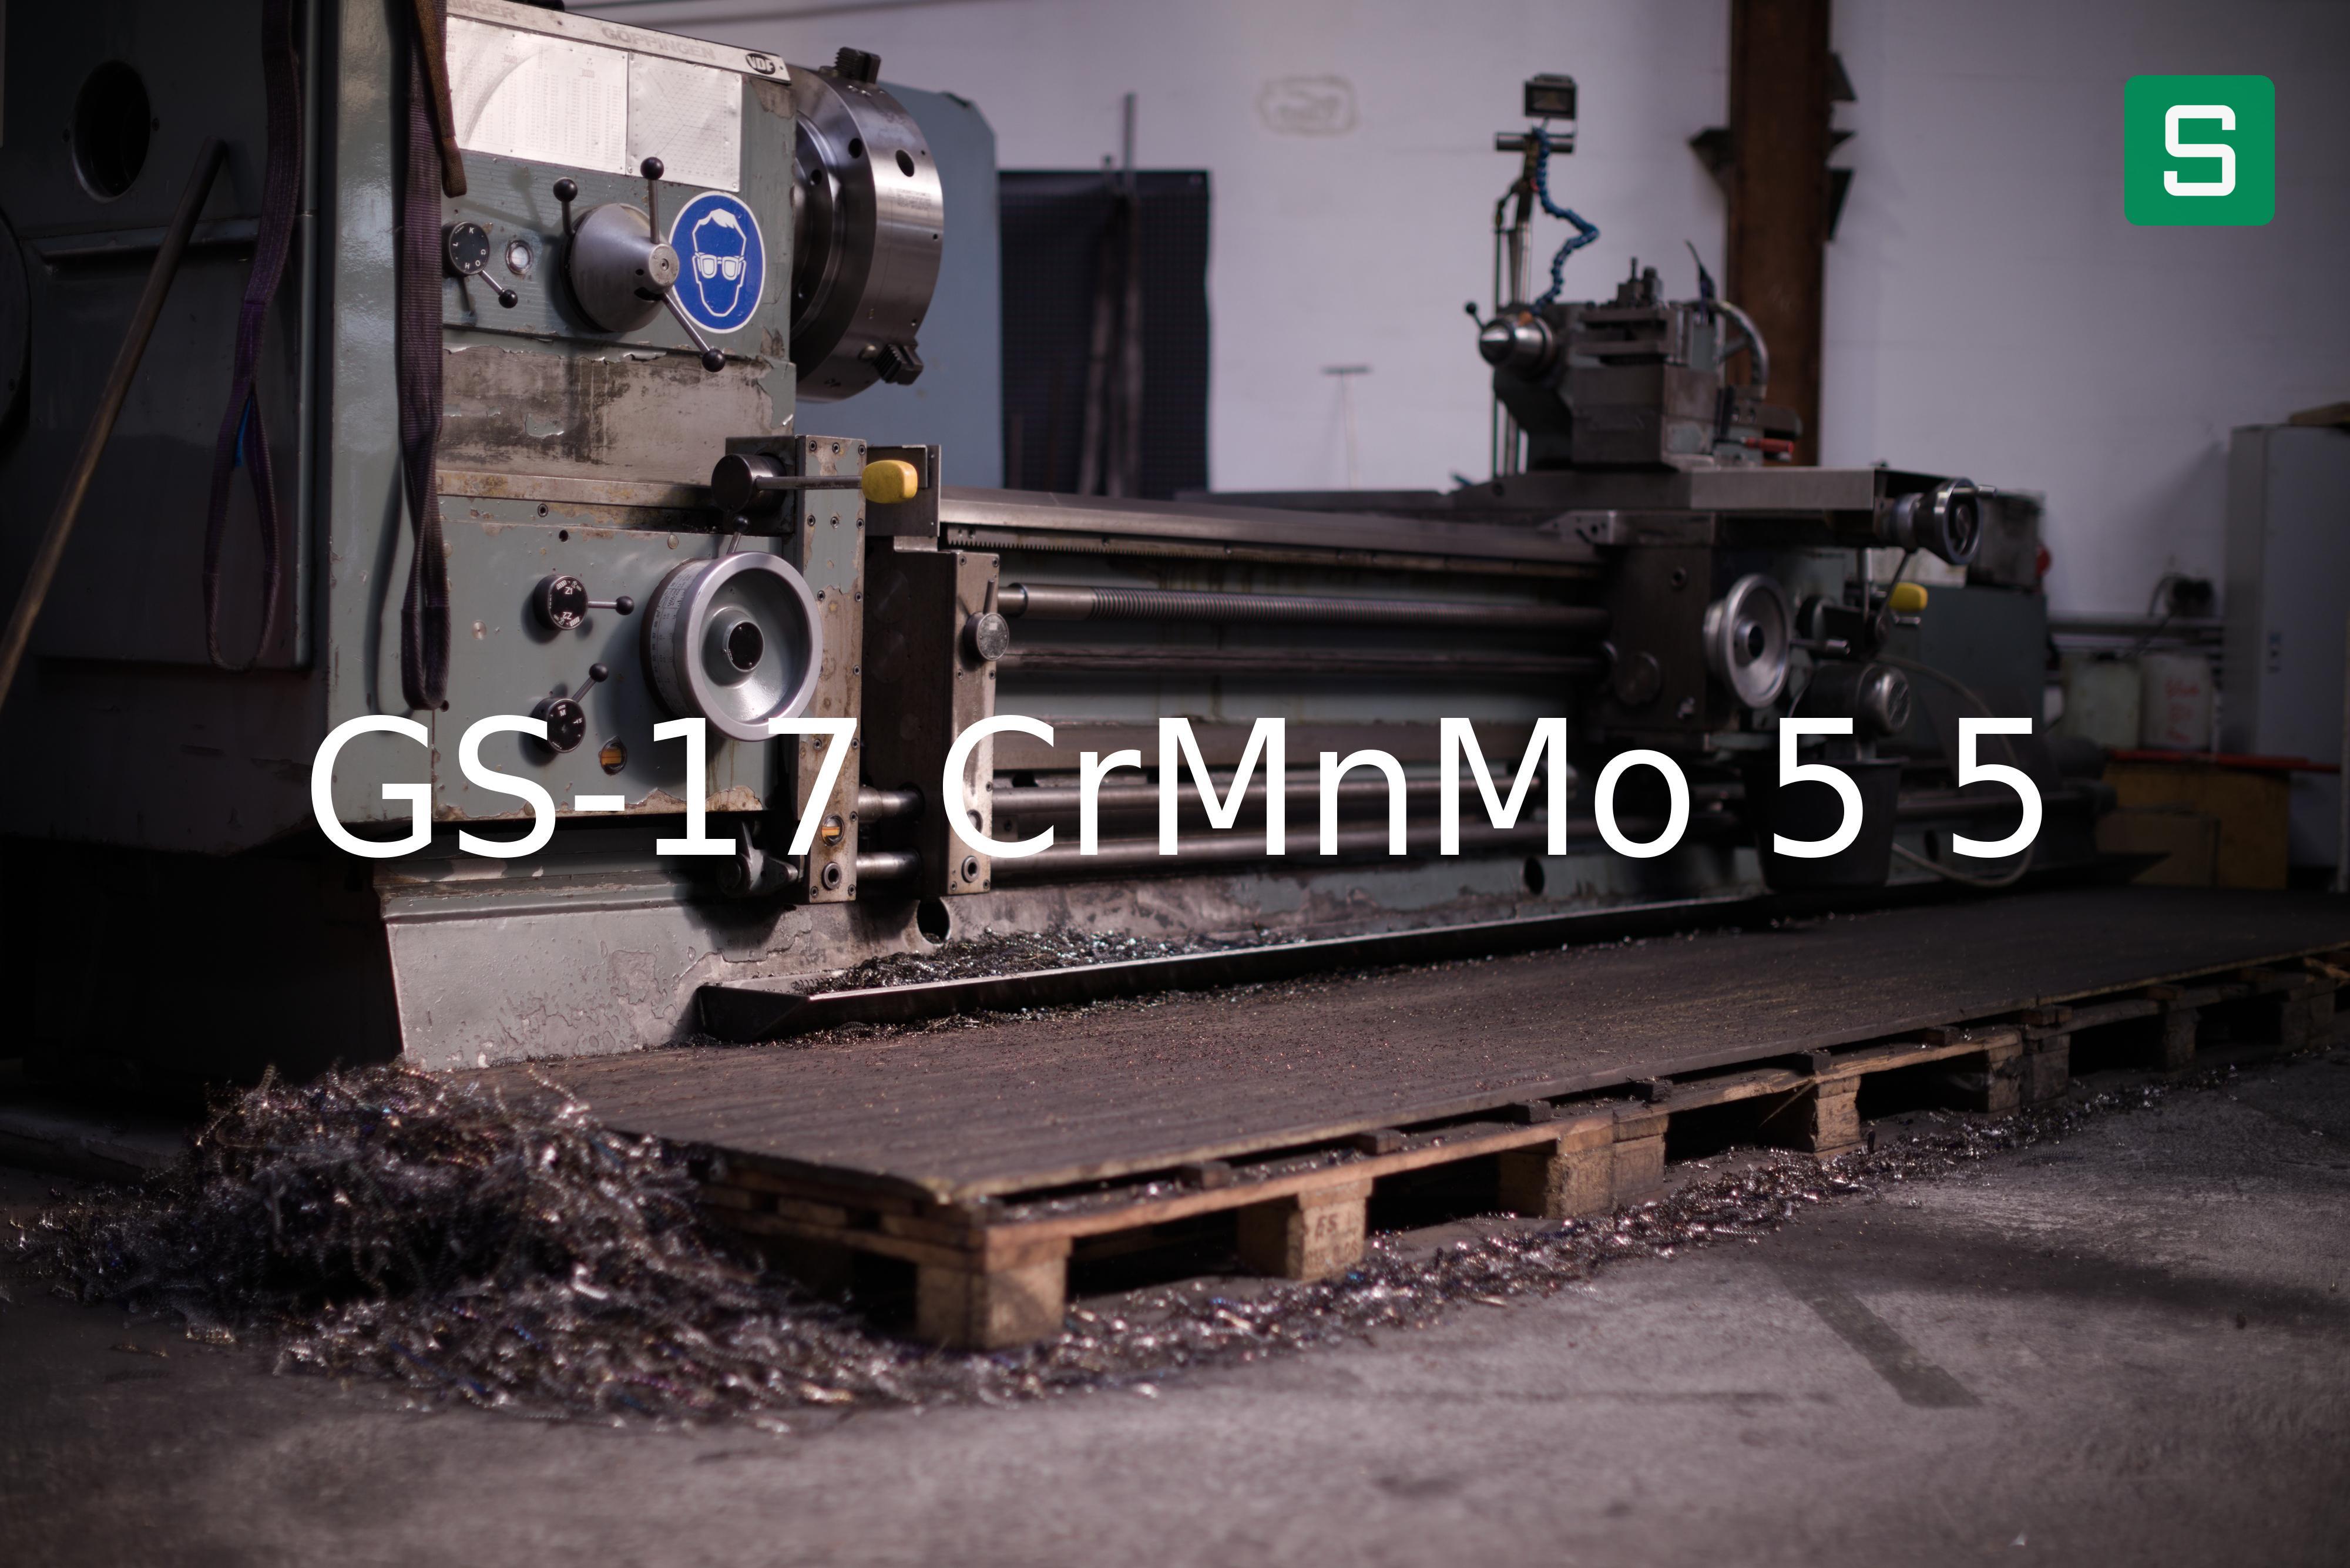 Steel Material: GS-17 CrMnMo 5 5